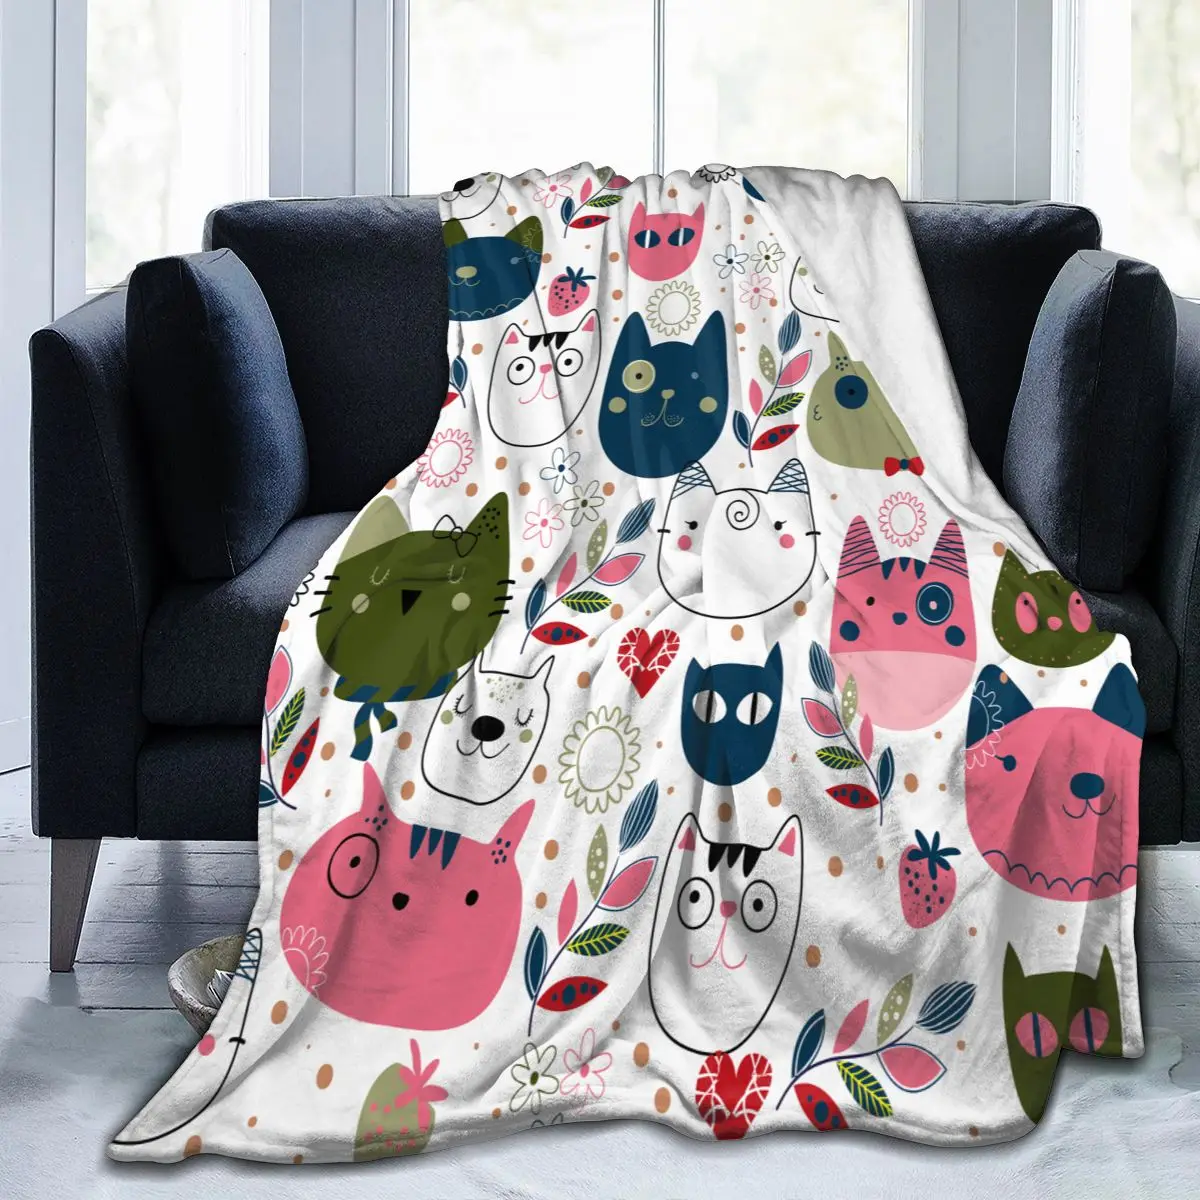 

Мягкое теплое фланелевое одеяло с изображением милой кошки, переносное зимнее одеяло для путешествий, тонкое покрывало для кровати, дивана